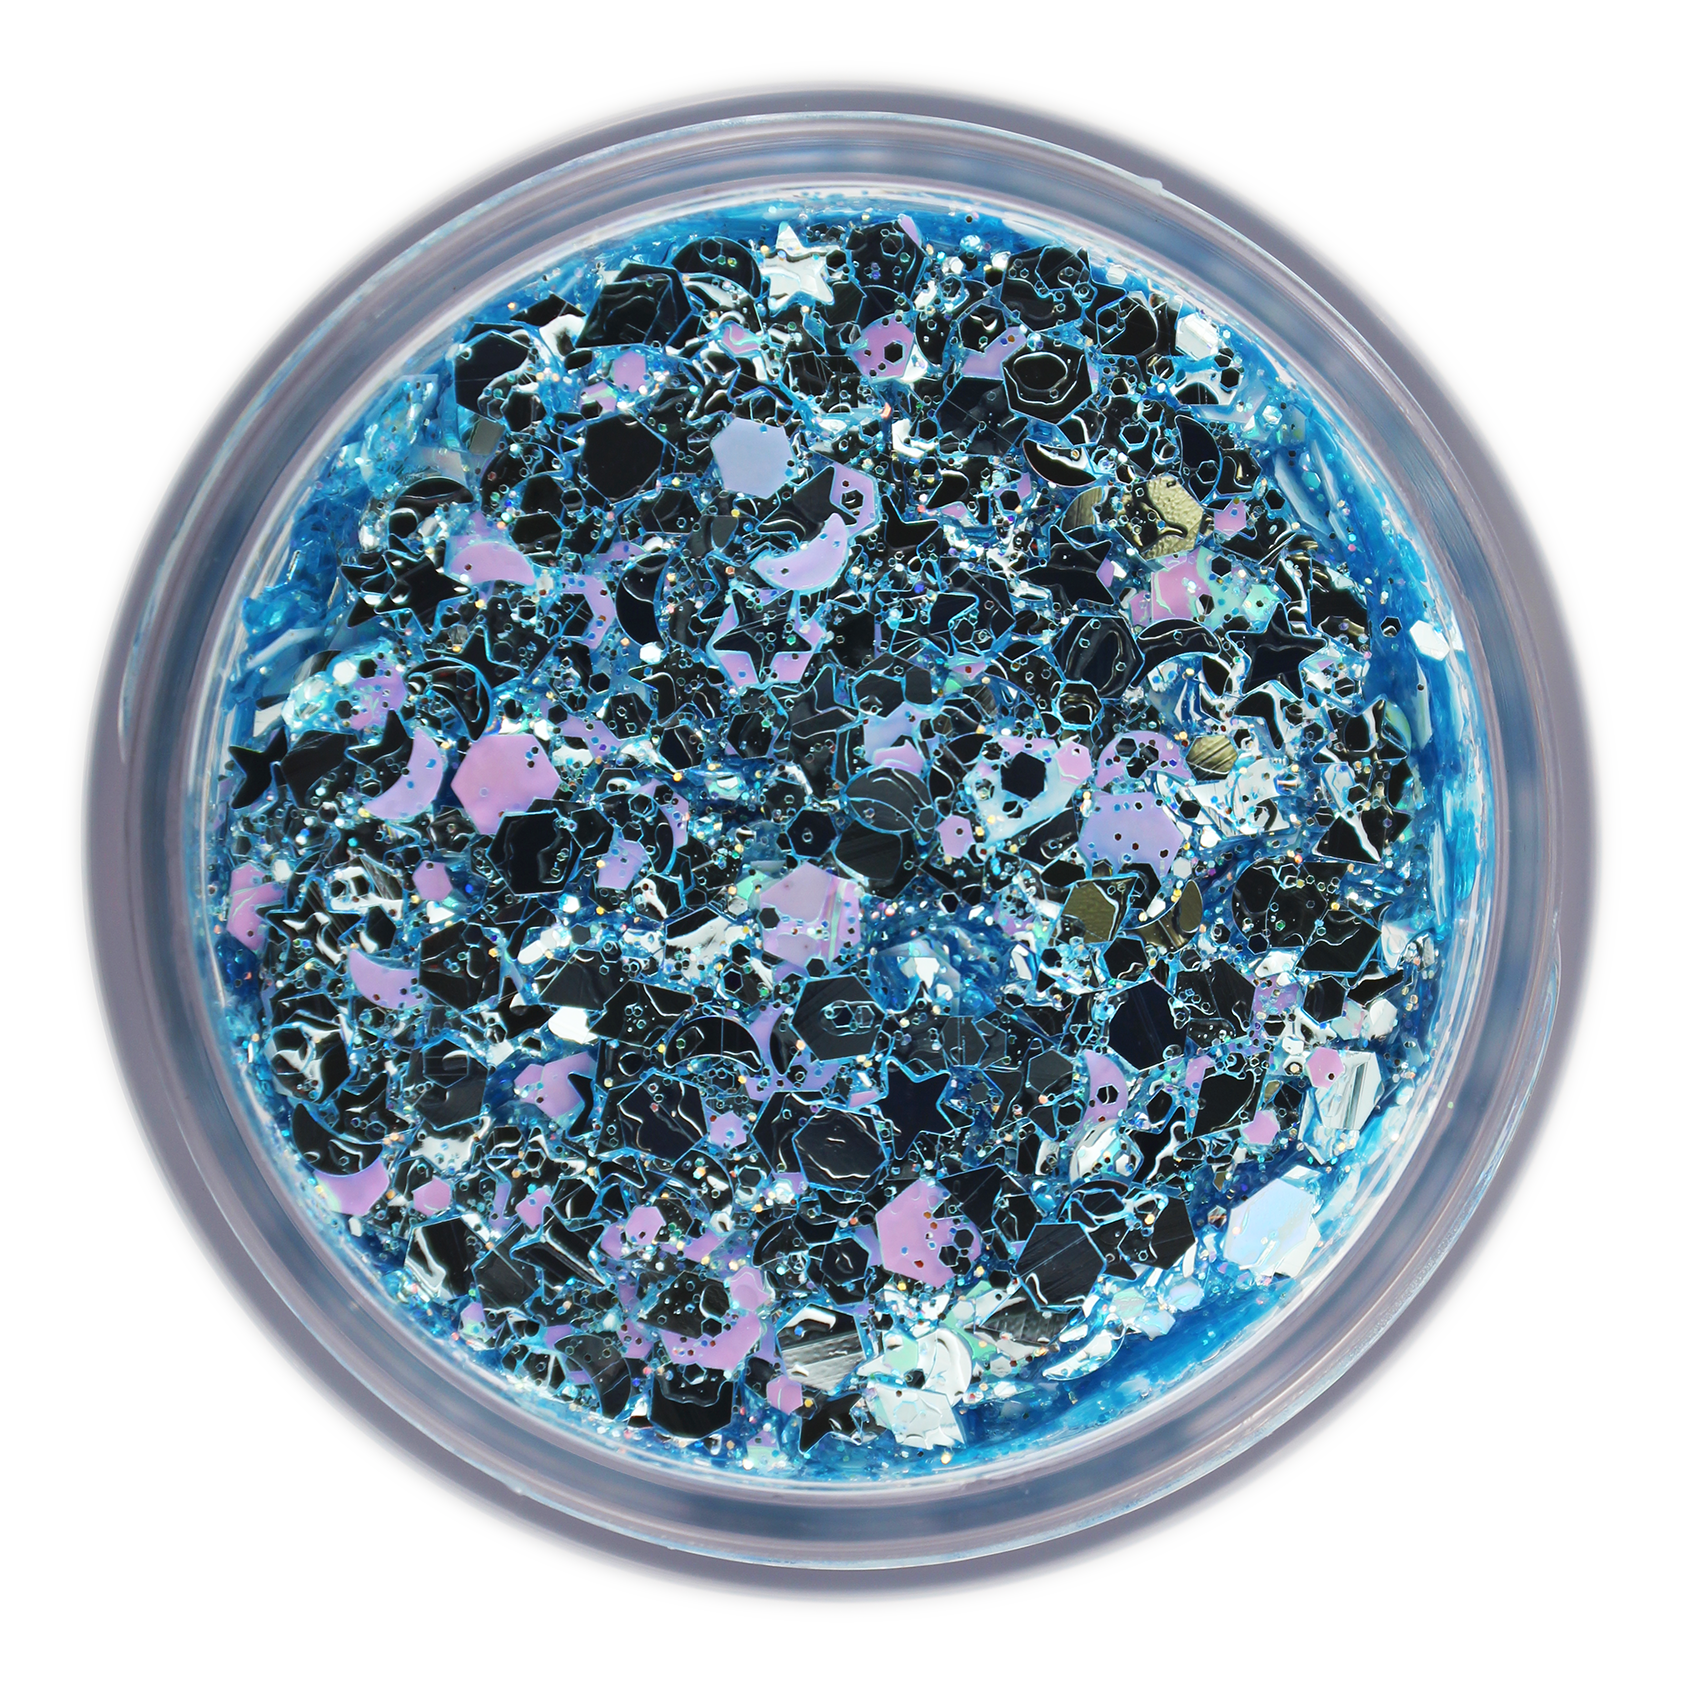 6-Color Blue Stacked Jar